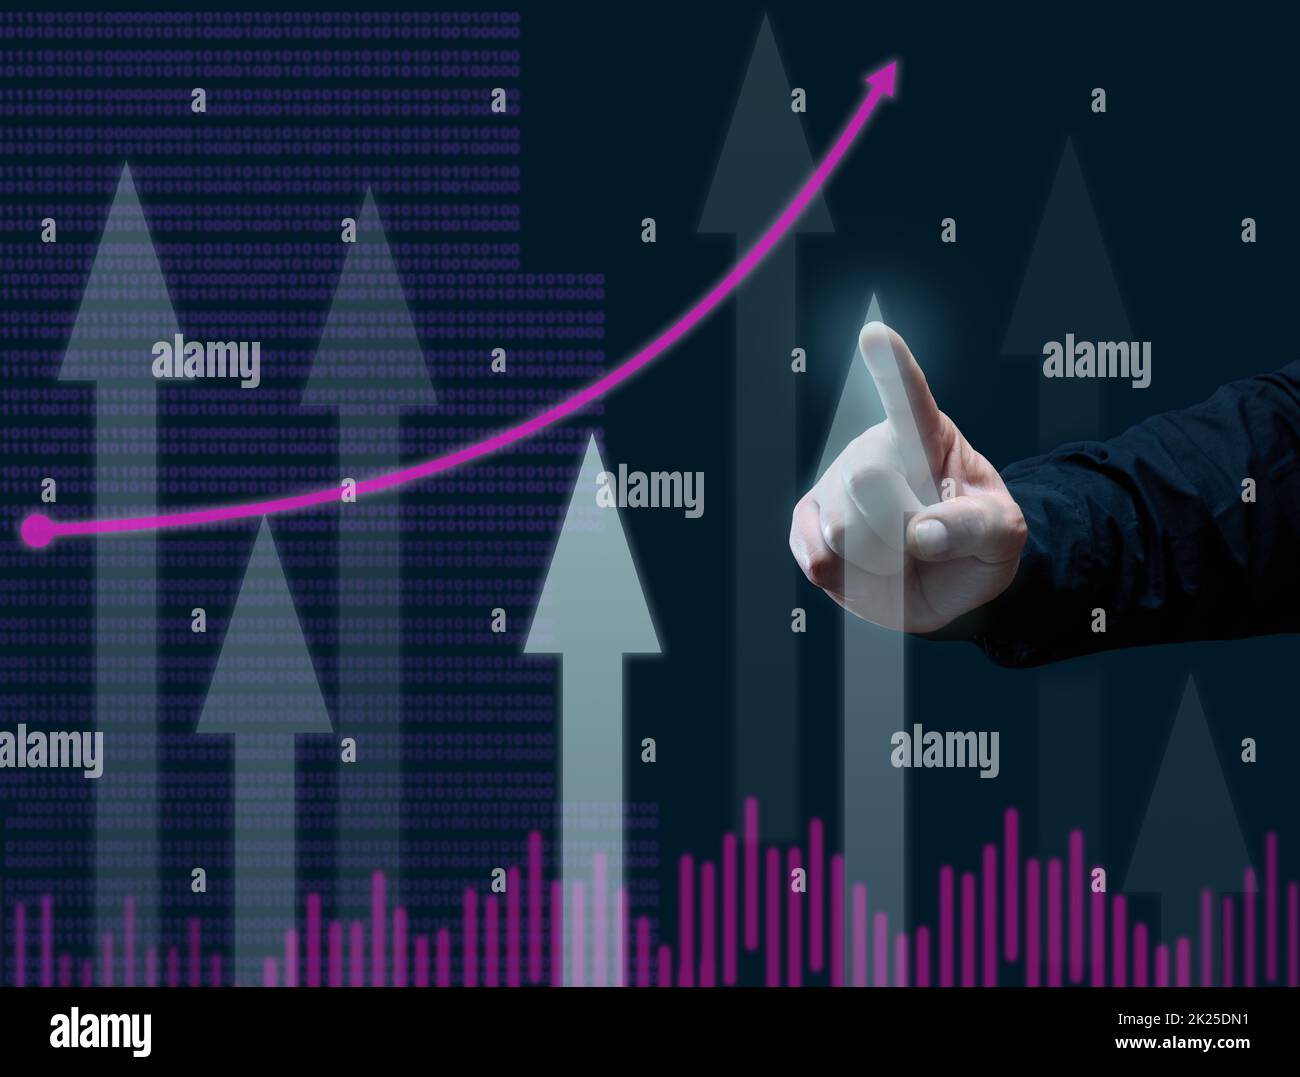 grafico aziendale della dinamica degli indicatori e la mano di un uomo punta un dito sulla colonna più alta, sfondo blu scuro. Concetto di crescita aziendale e altri parametri Foto Stock